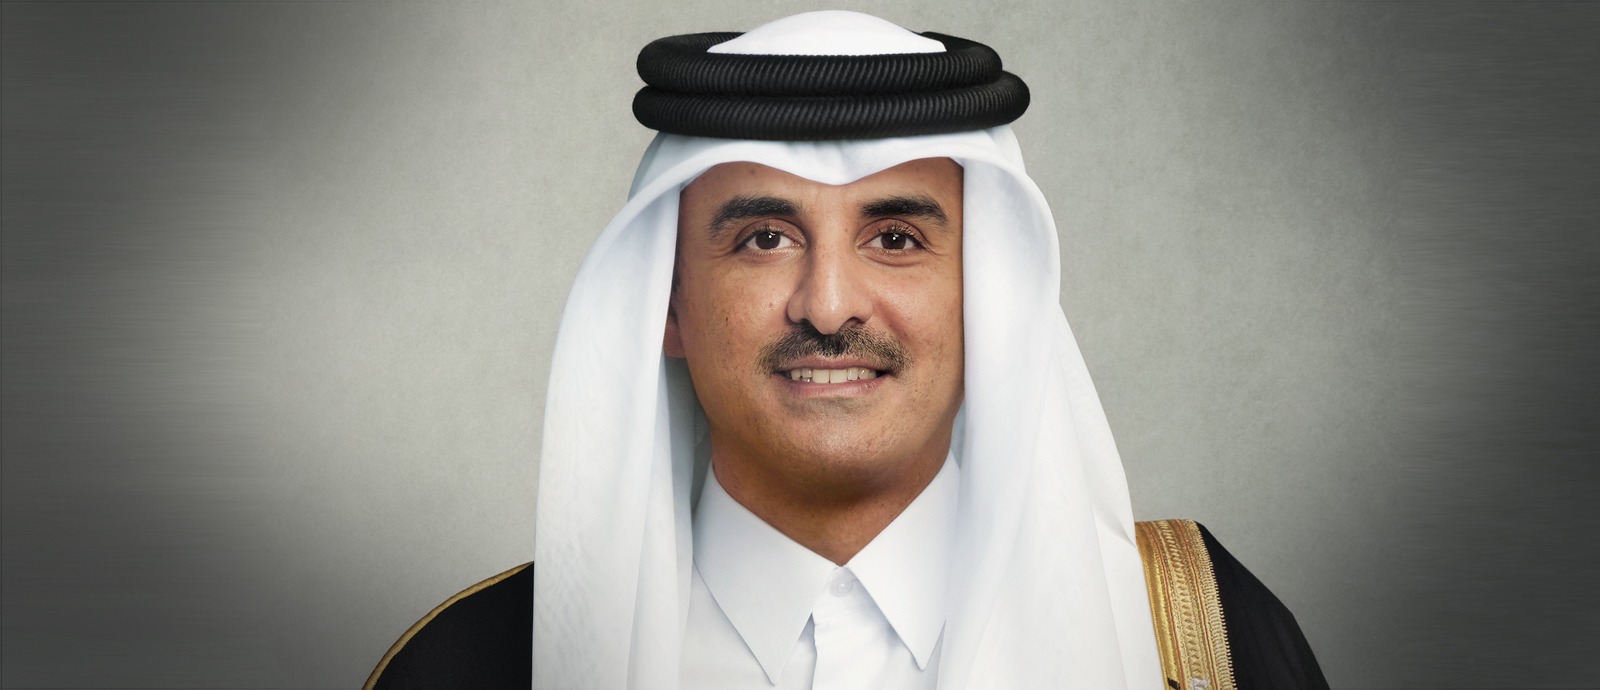 سمو الأمير يشهد ختام بطولة قطر إكسون موبيل المفتوحة للتنس